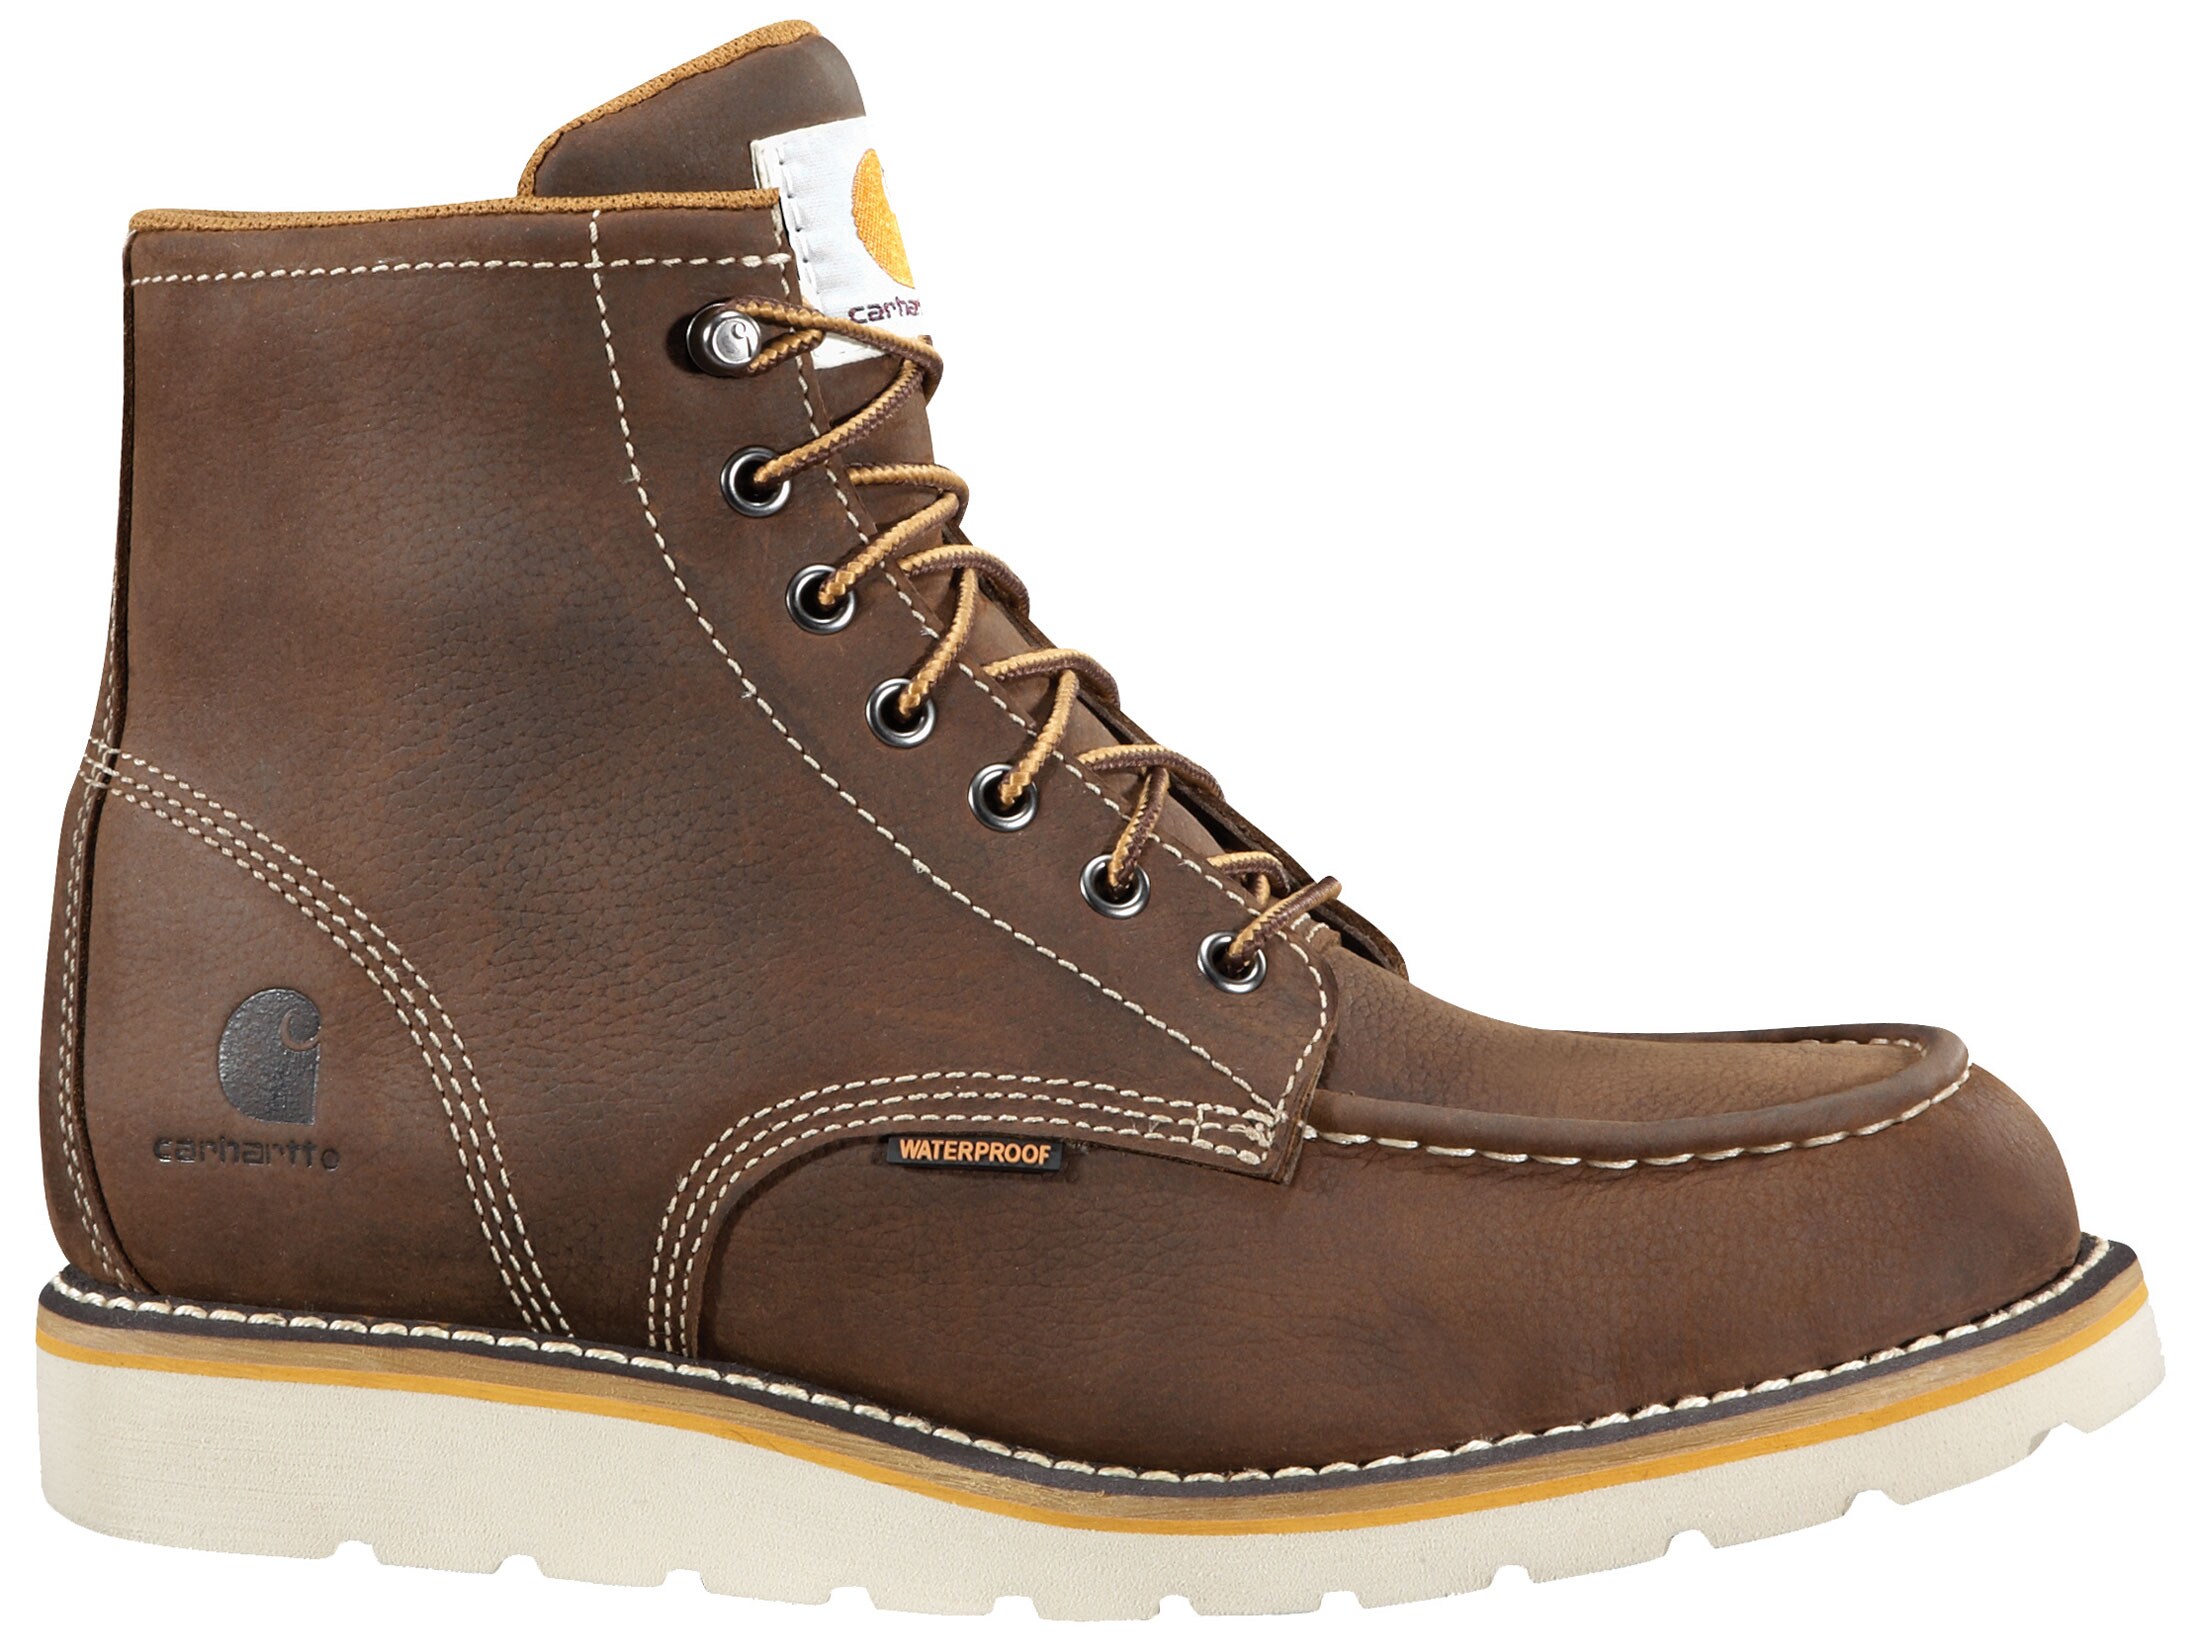 Carhartt Wedge 6 Waterproof Work Boots Leather Brown Men's 14 D